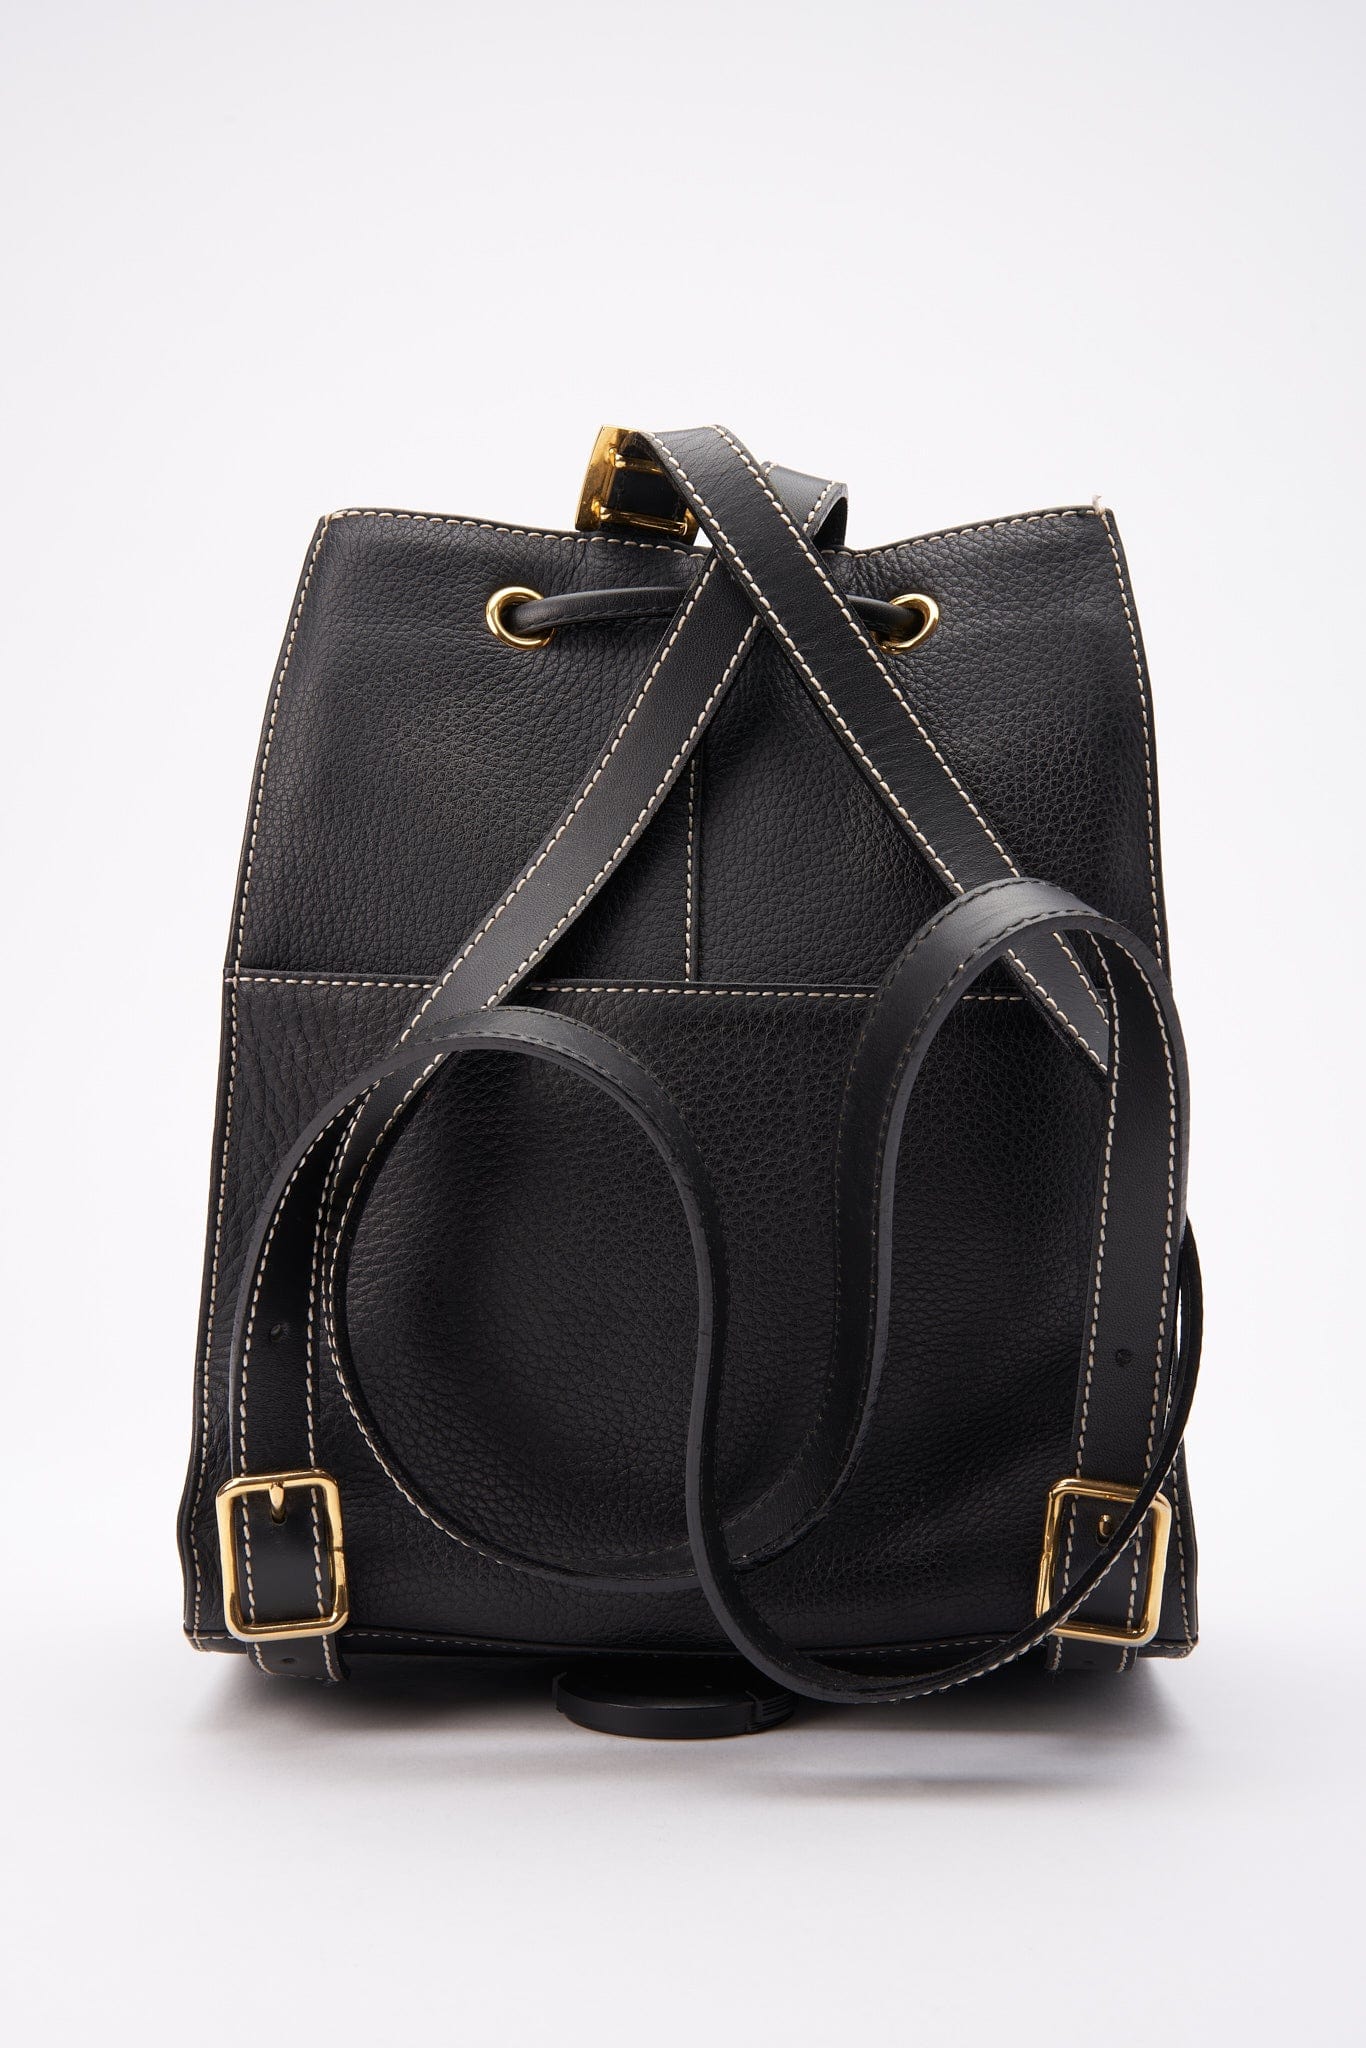 Vintage Burberry Black Leather Backpack